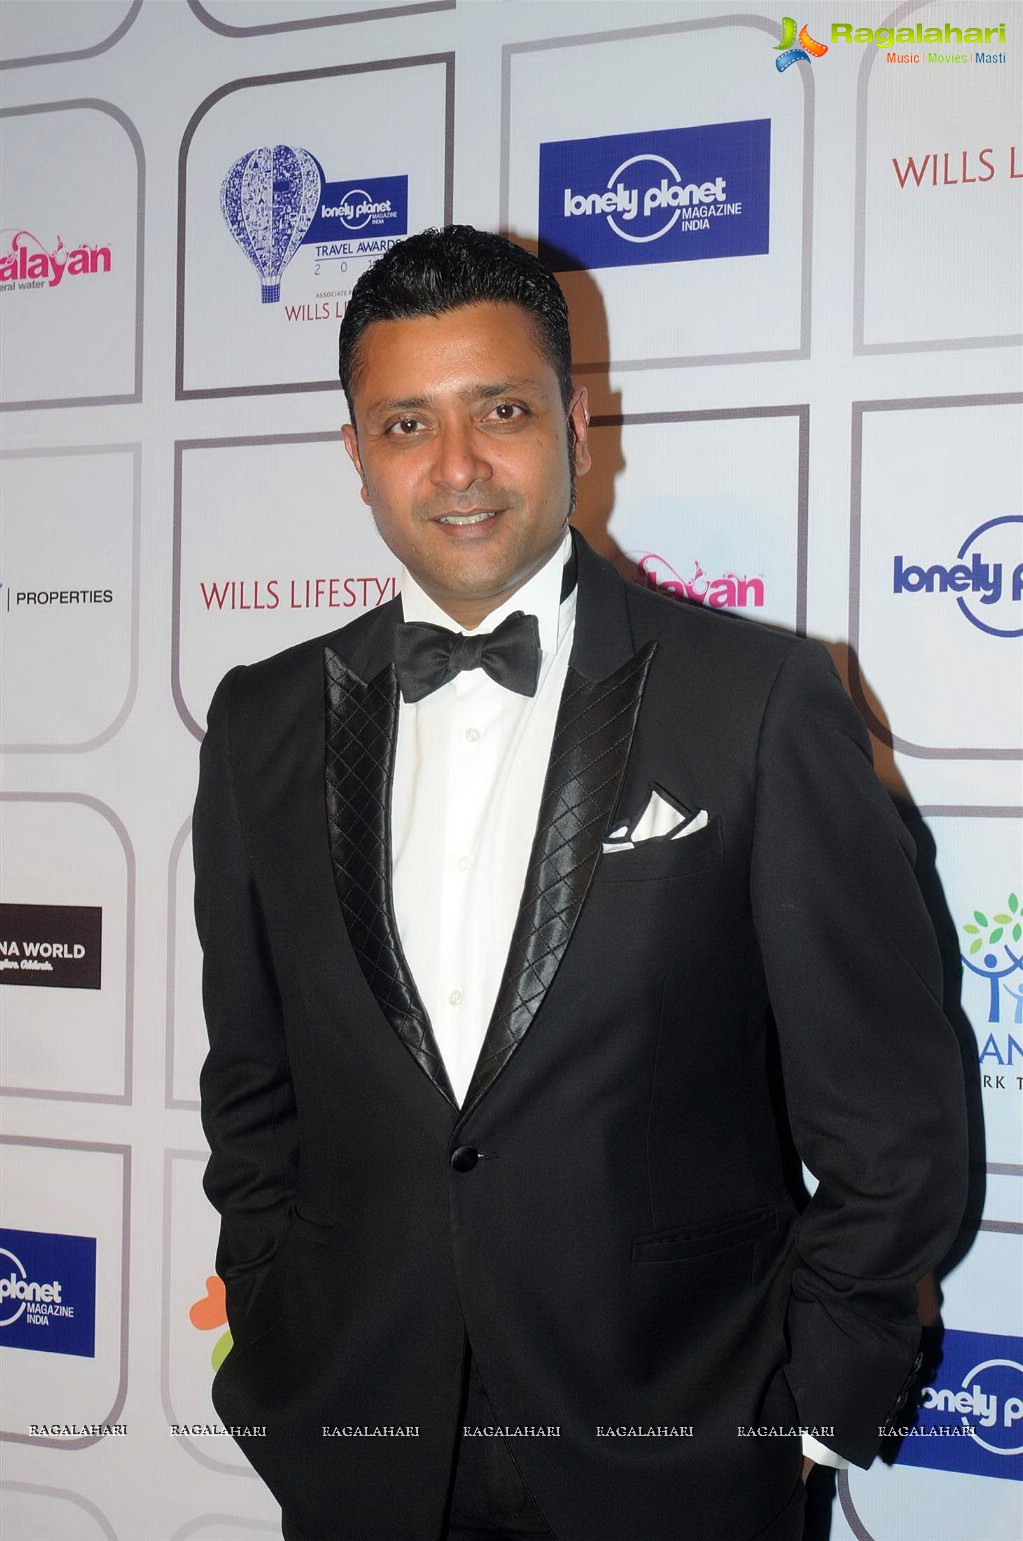 Lonely Planet Magazine India Travel Awards 2014, Mumbai